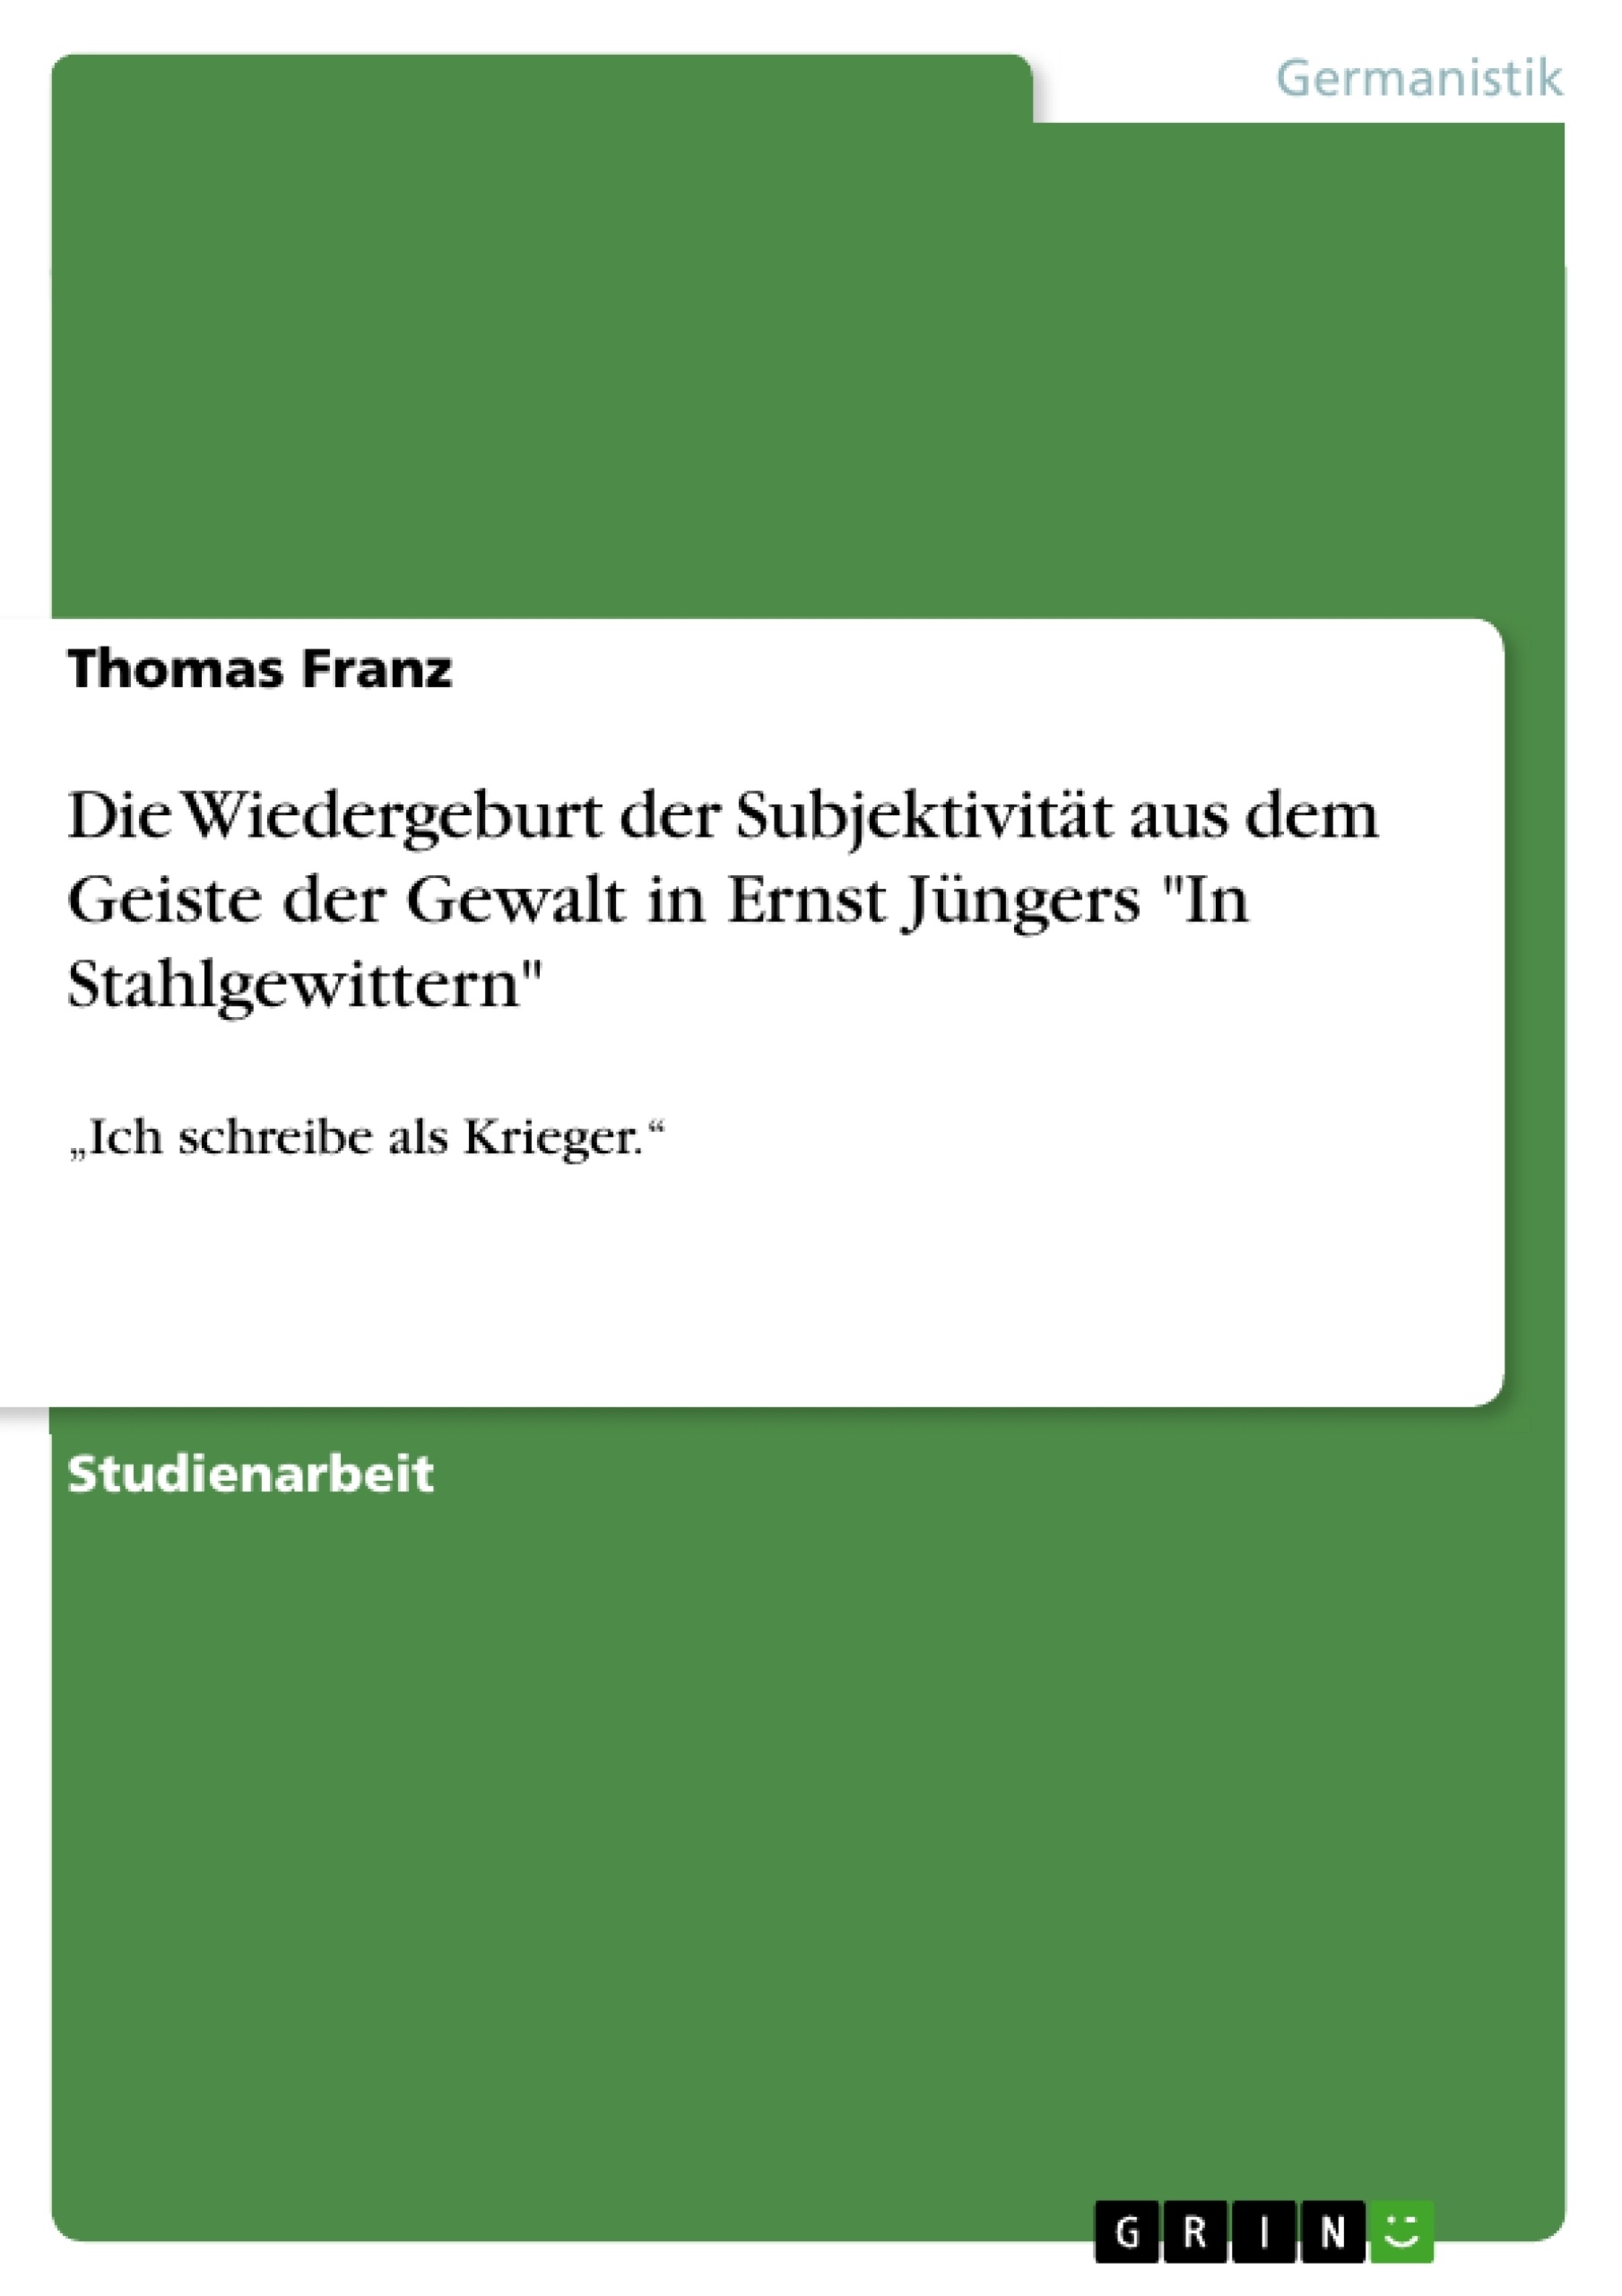 Título: Die Wiedergeburt der Subjektivität aus dem Geiste der Gewalt in Ernst Jüngers "In Stahlgewittern"